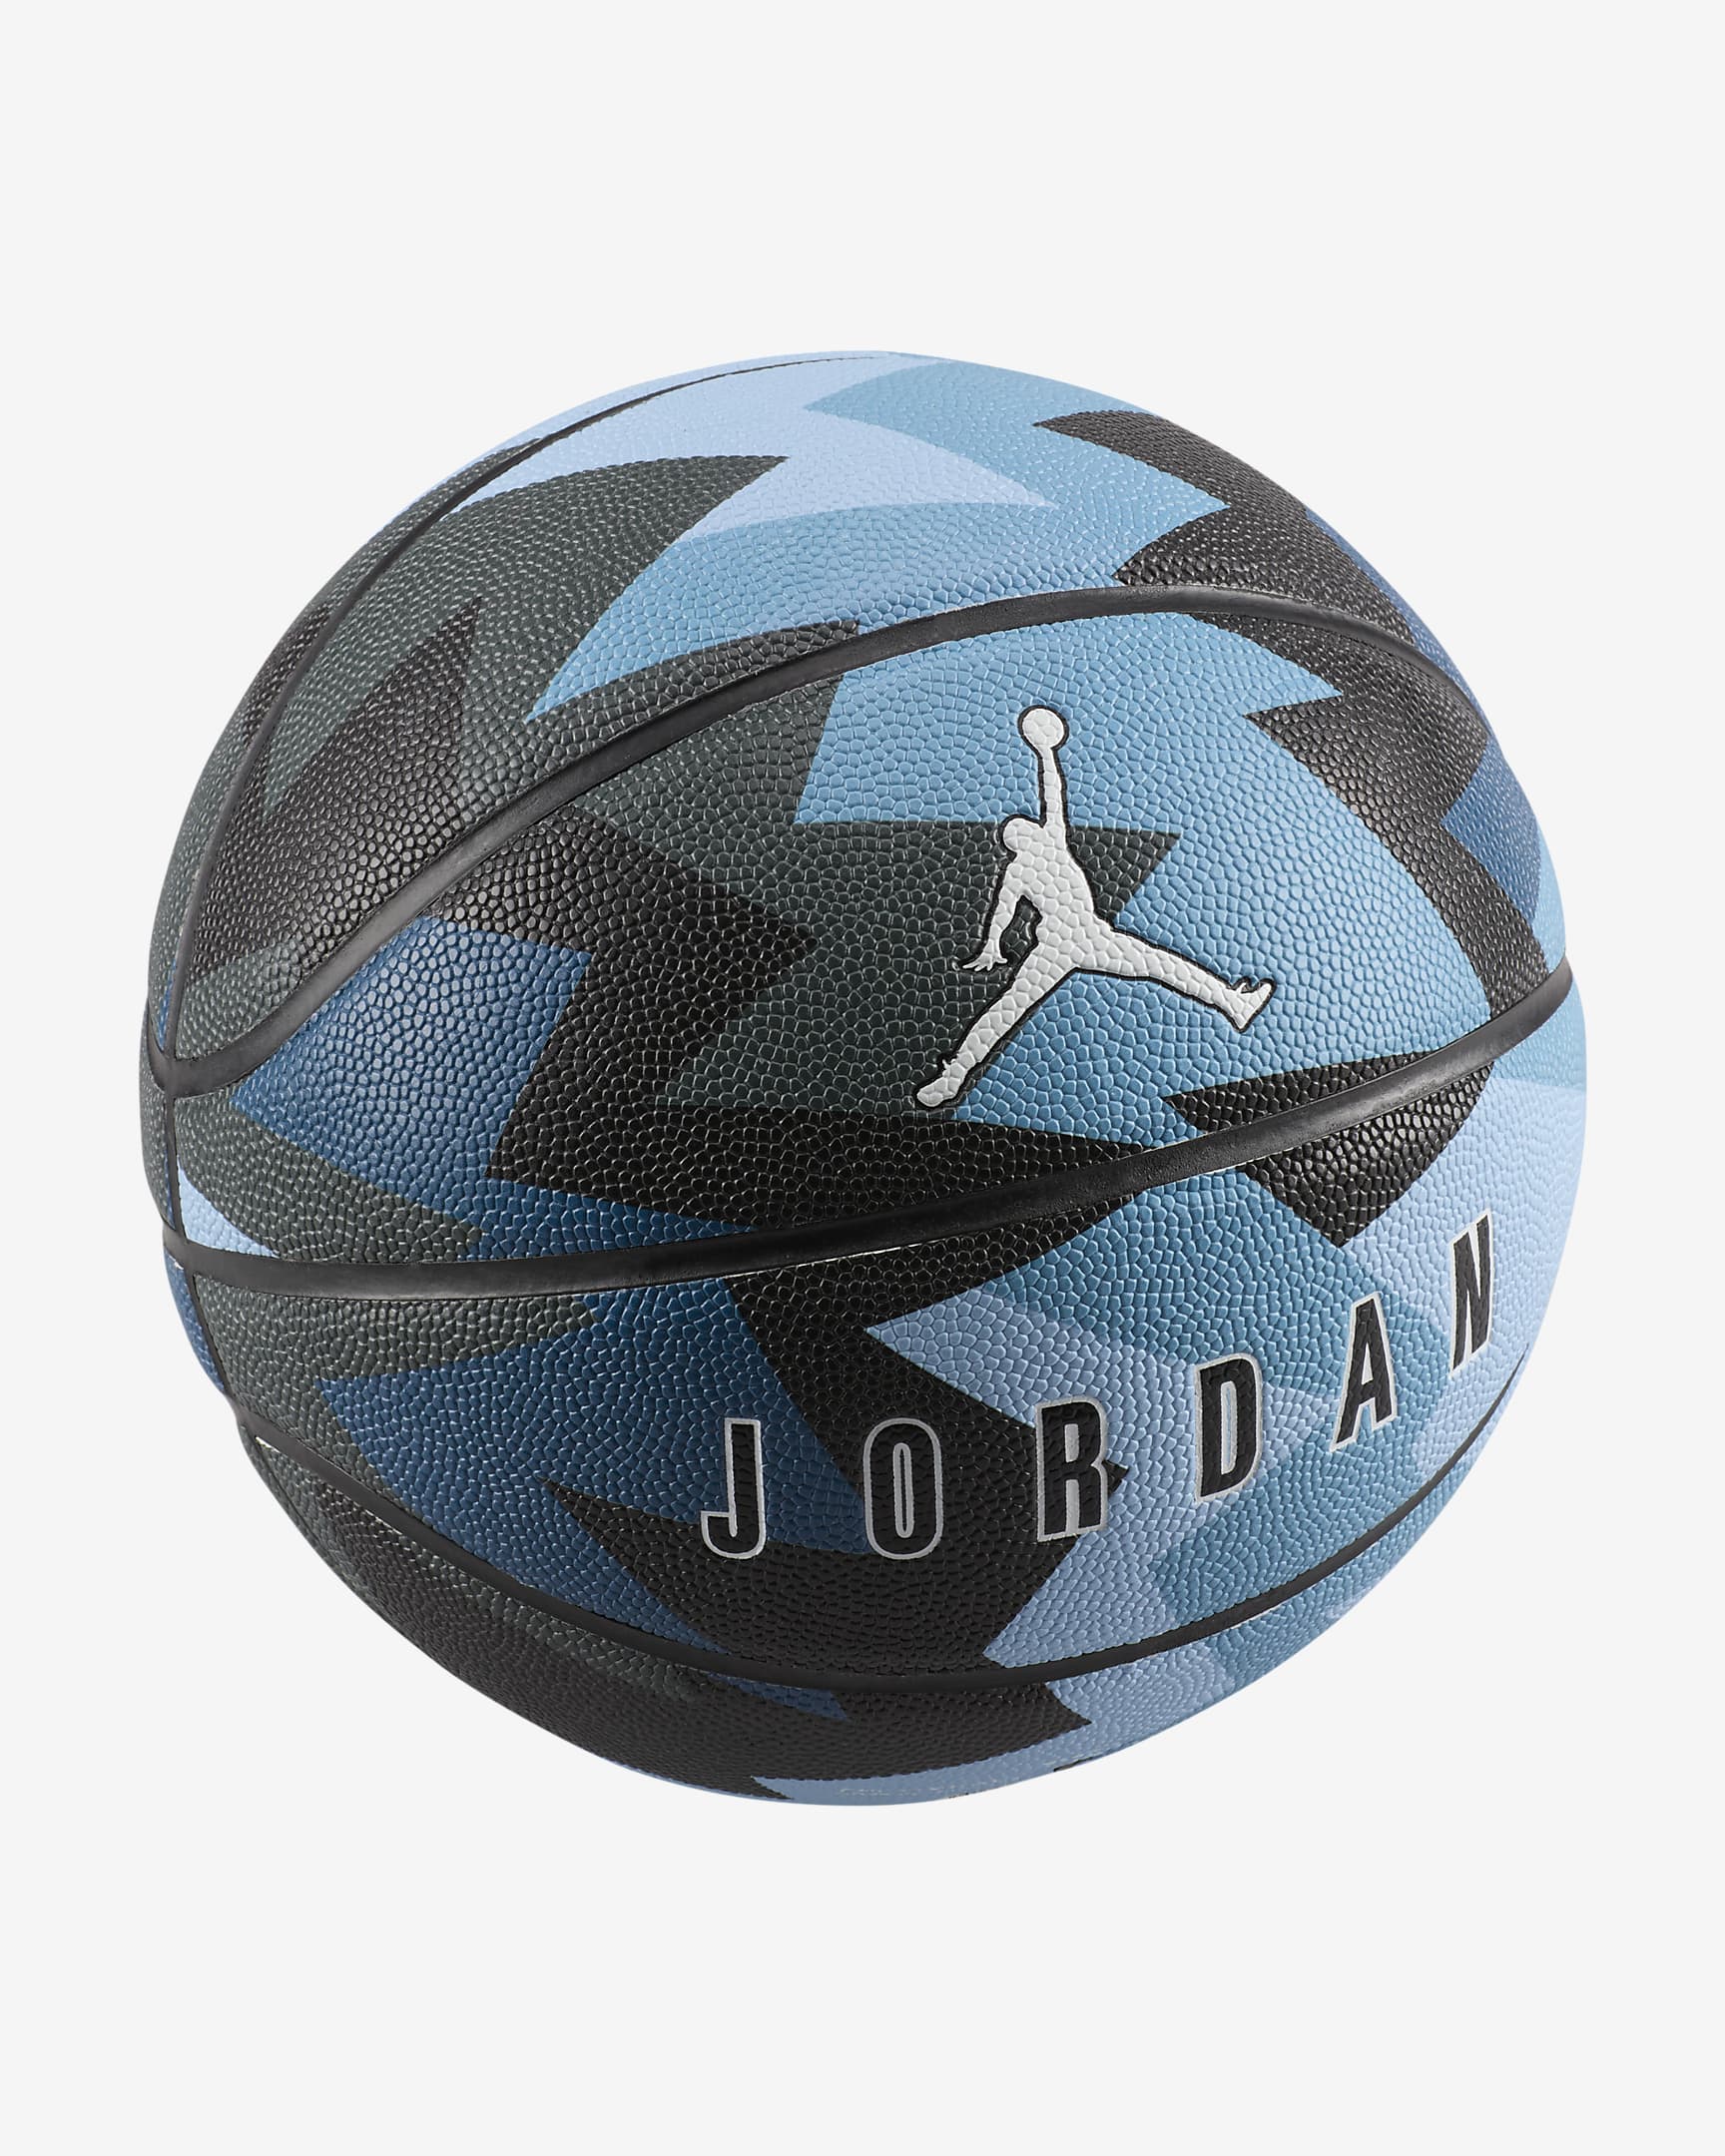 Jordan 8P Basketball (nicht aufgeblasen) - Dark Shadow/Royal Tint/Schwarz/Weiß